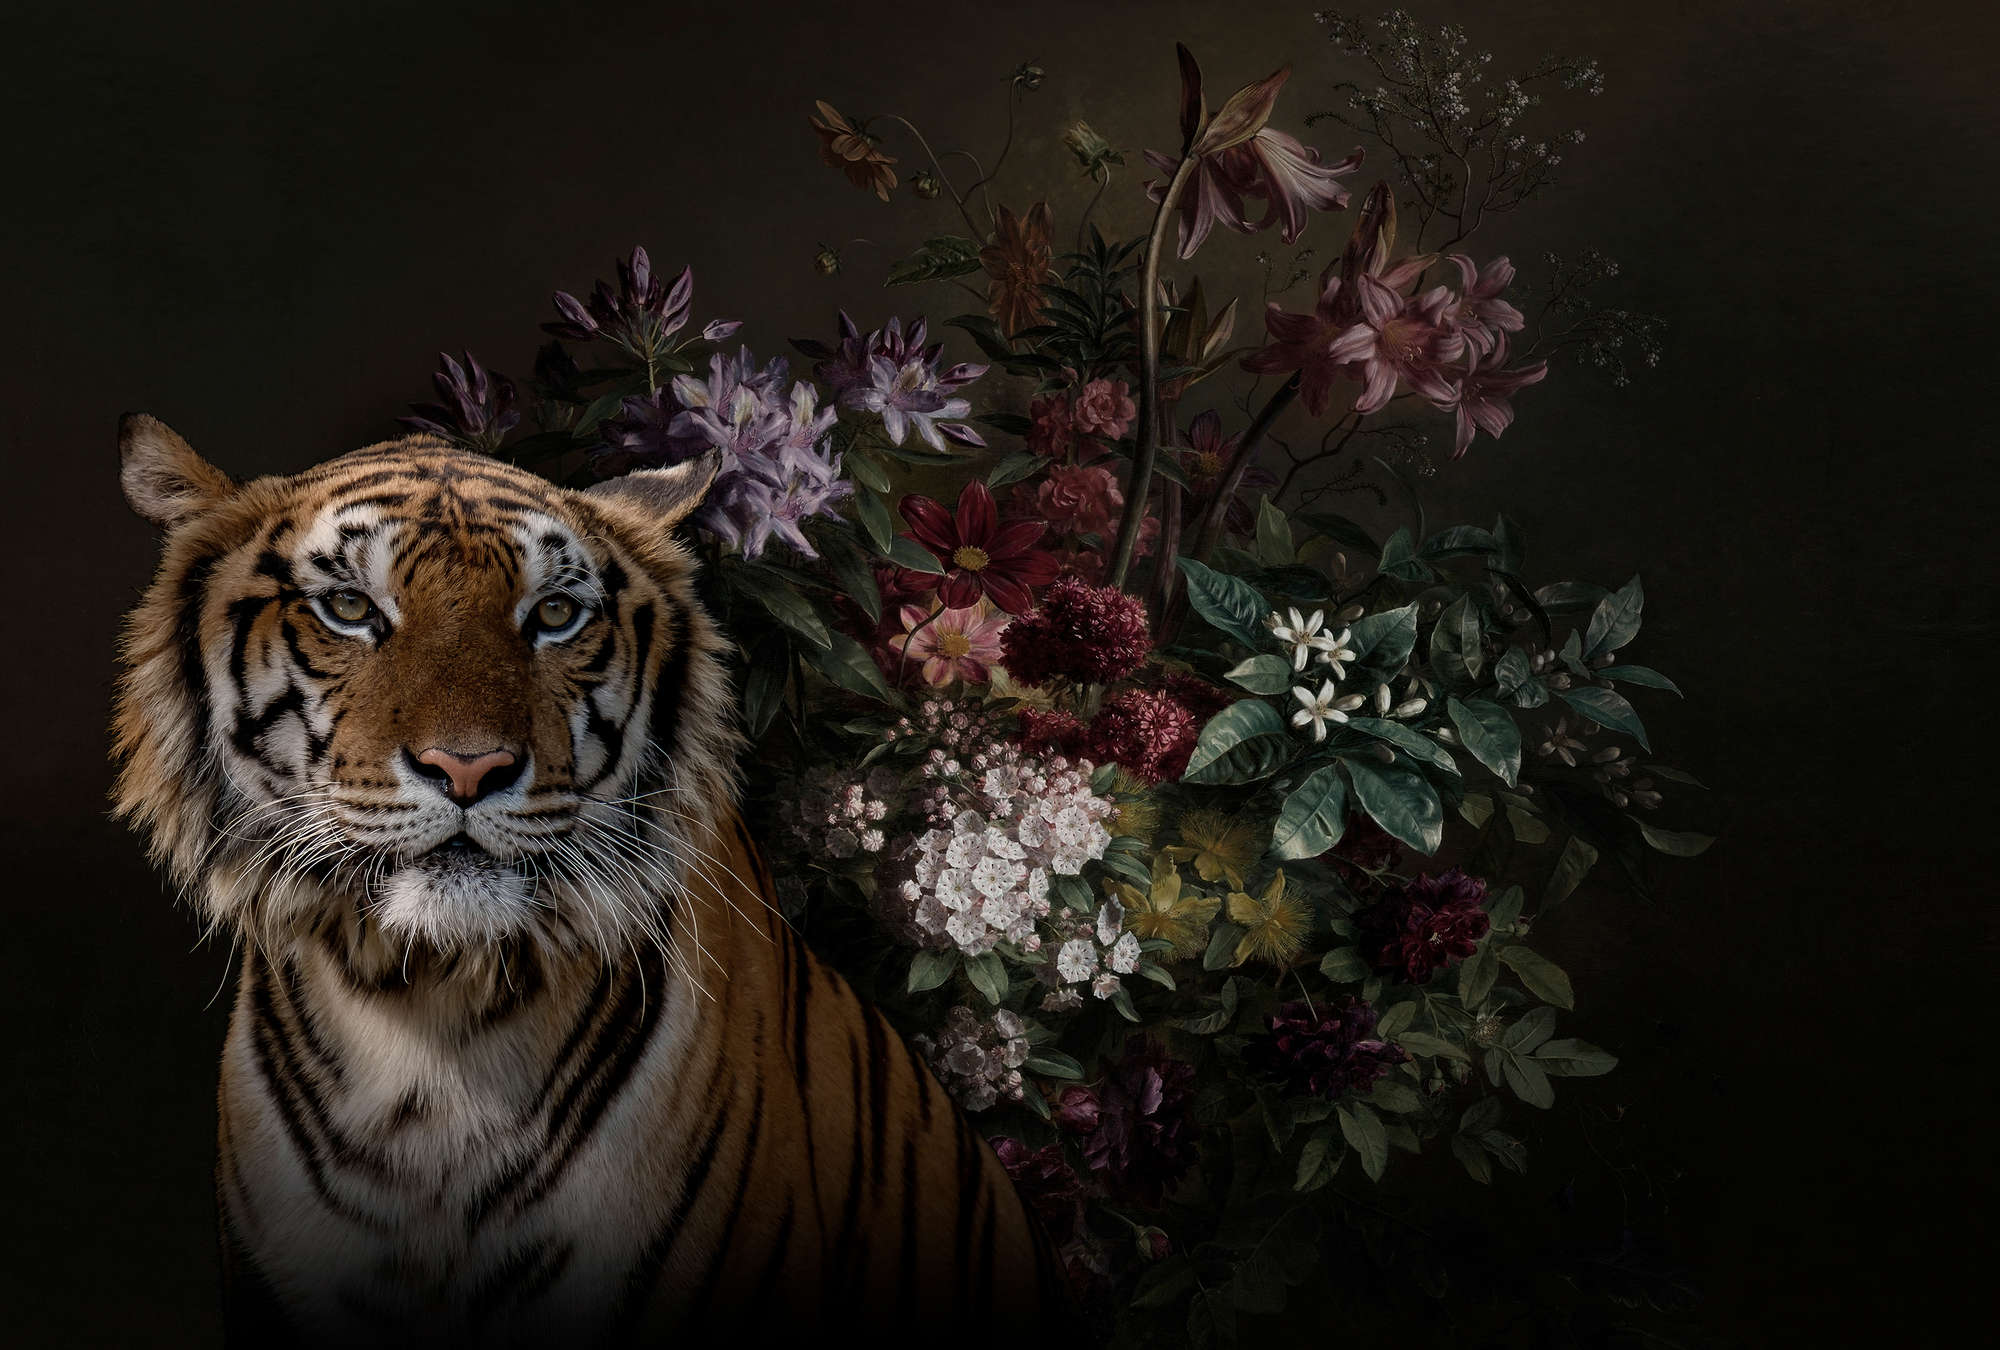             Fotomurali Ritratto di tigre con fiori - Walls by Patel
        